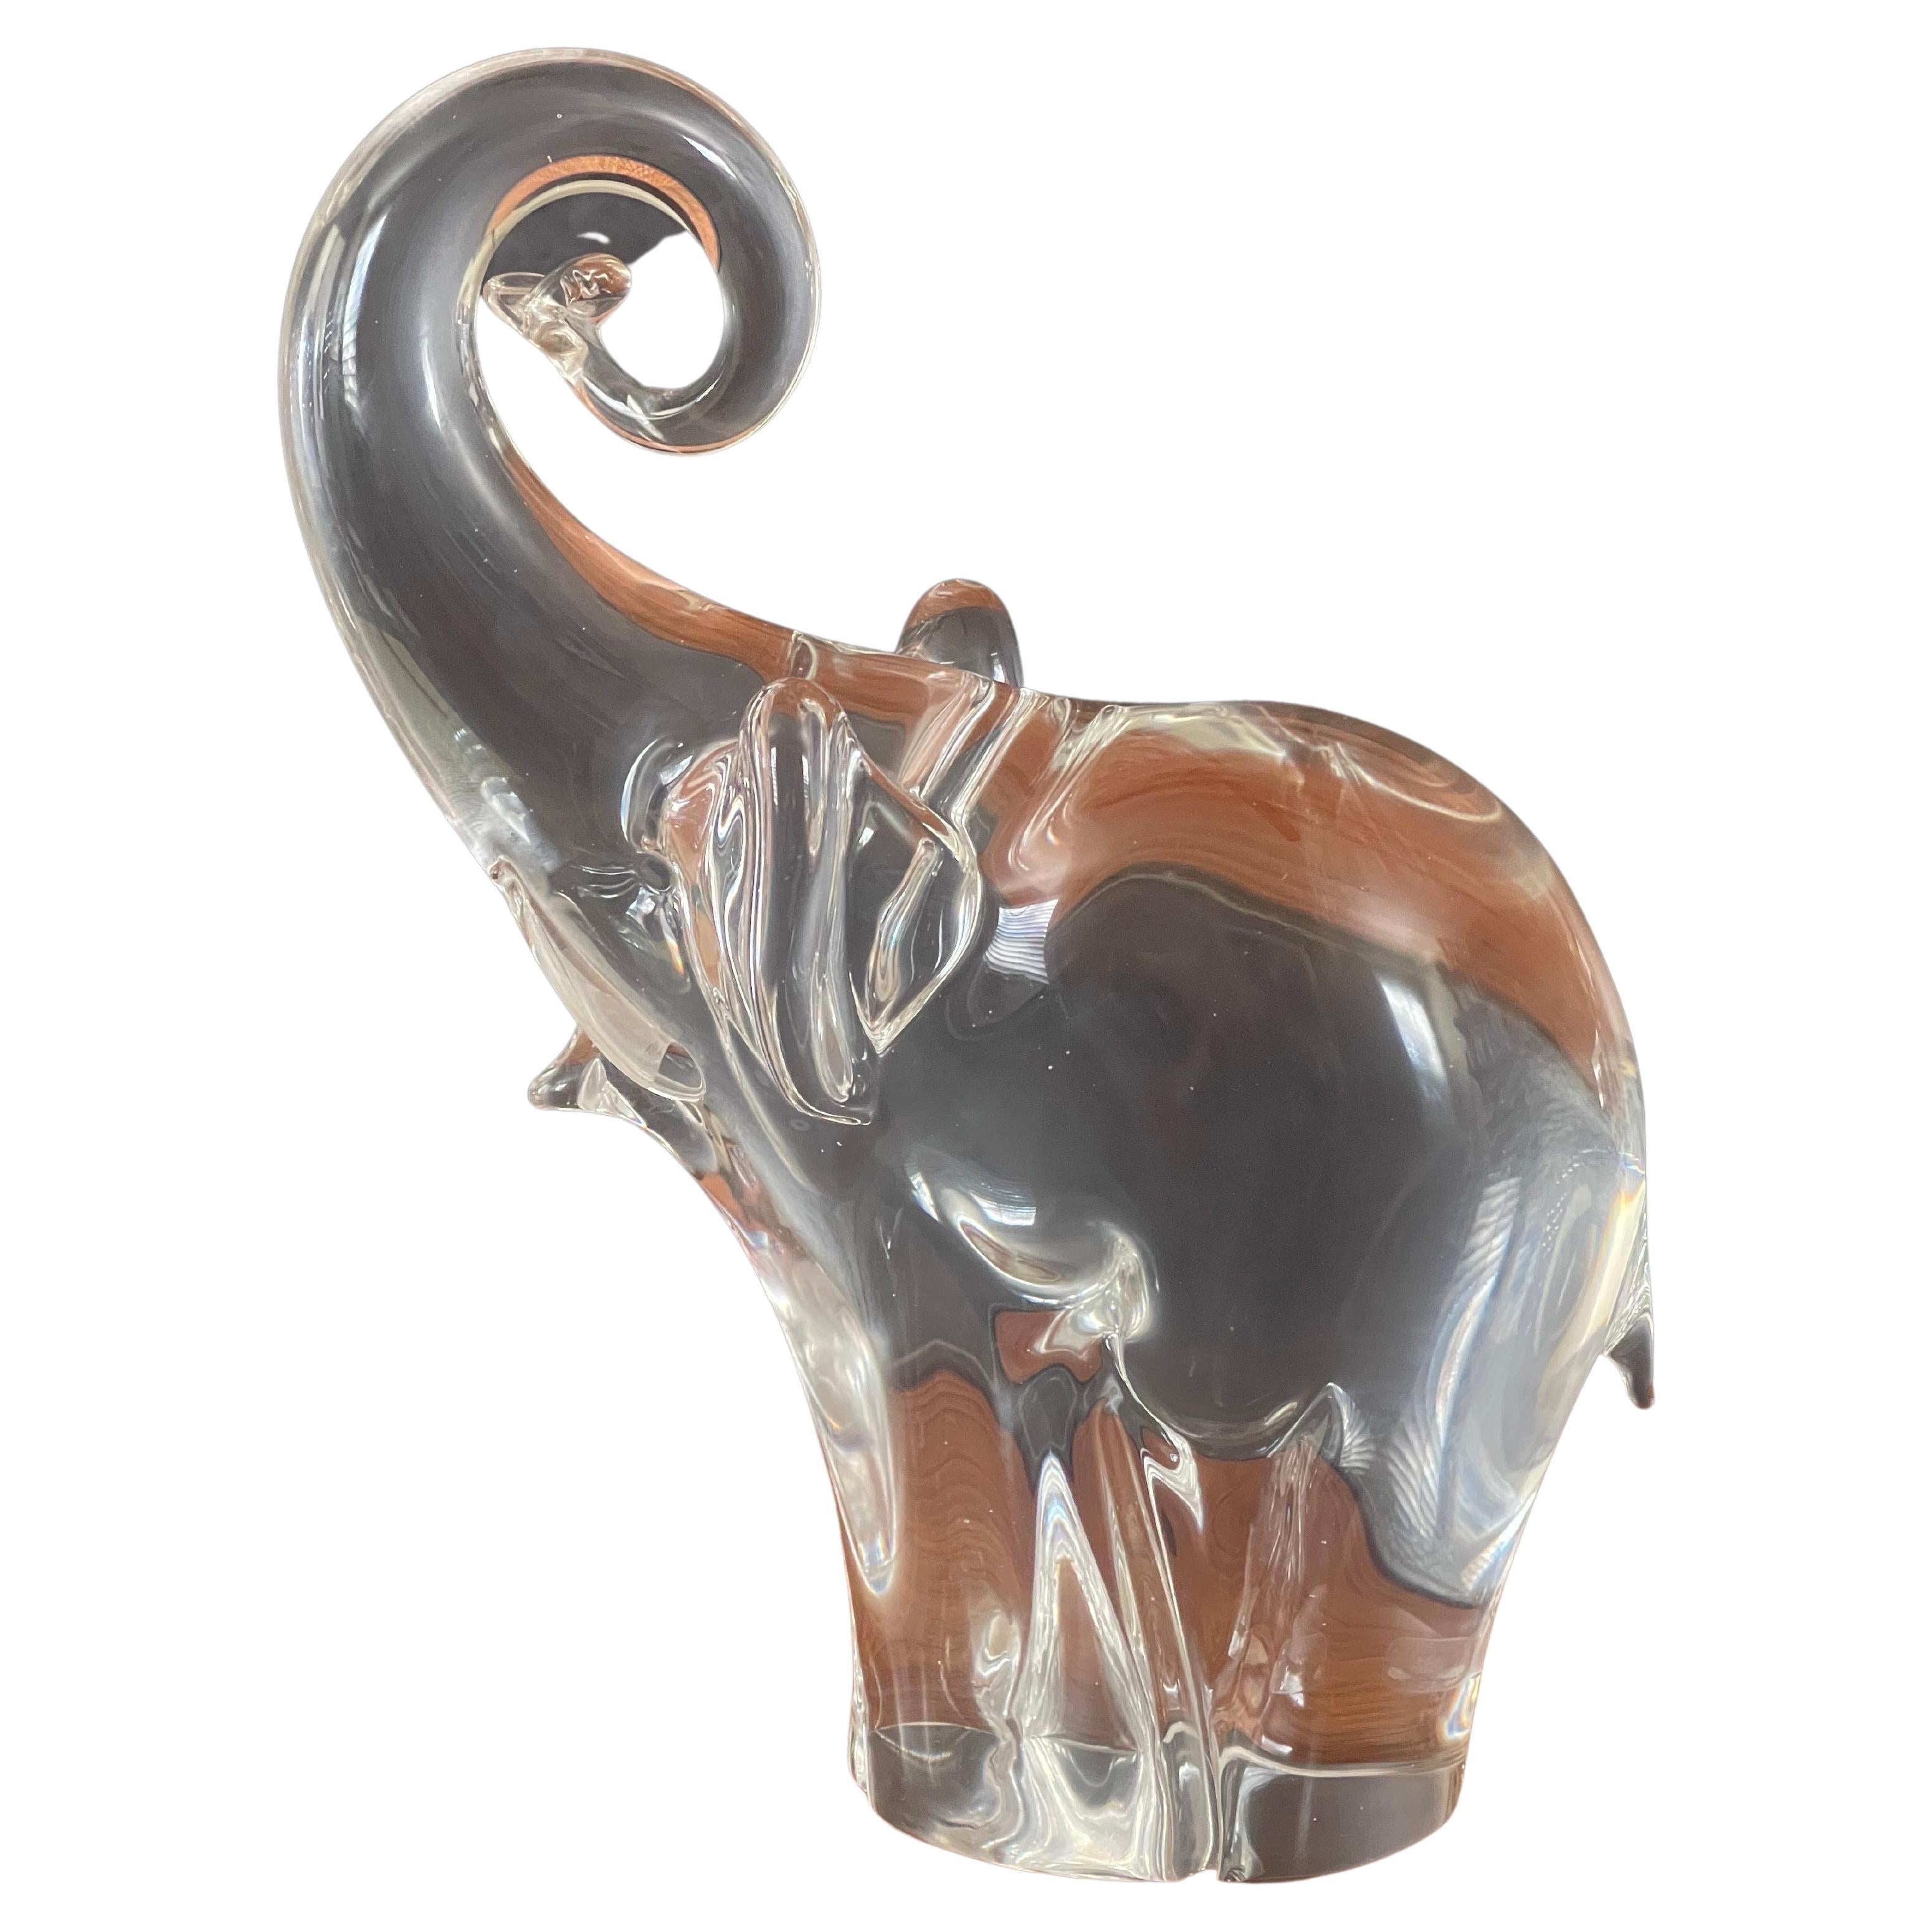 Magnifique sculpture d'éléphant en verre d'art par Oggetti pour Murano glass, vers les années 1970. La sculpture est en très bon état, sans éclats ni fissures (quelques rayures sur le dessous) et mesure 8 